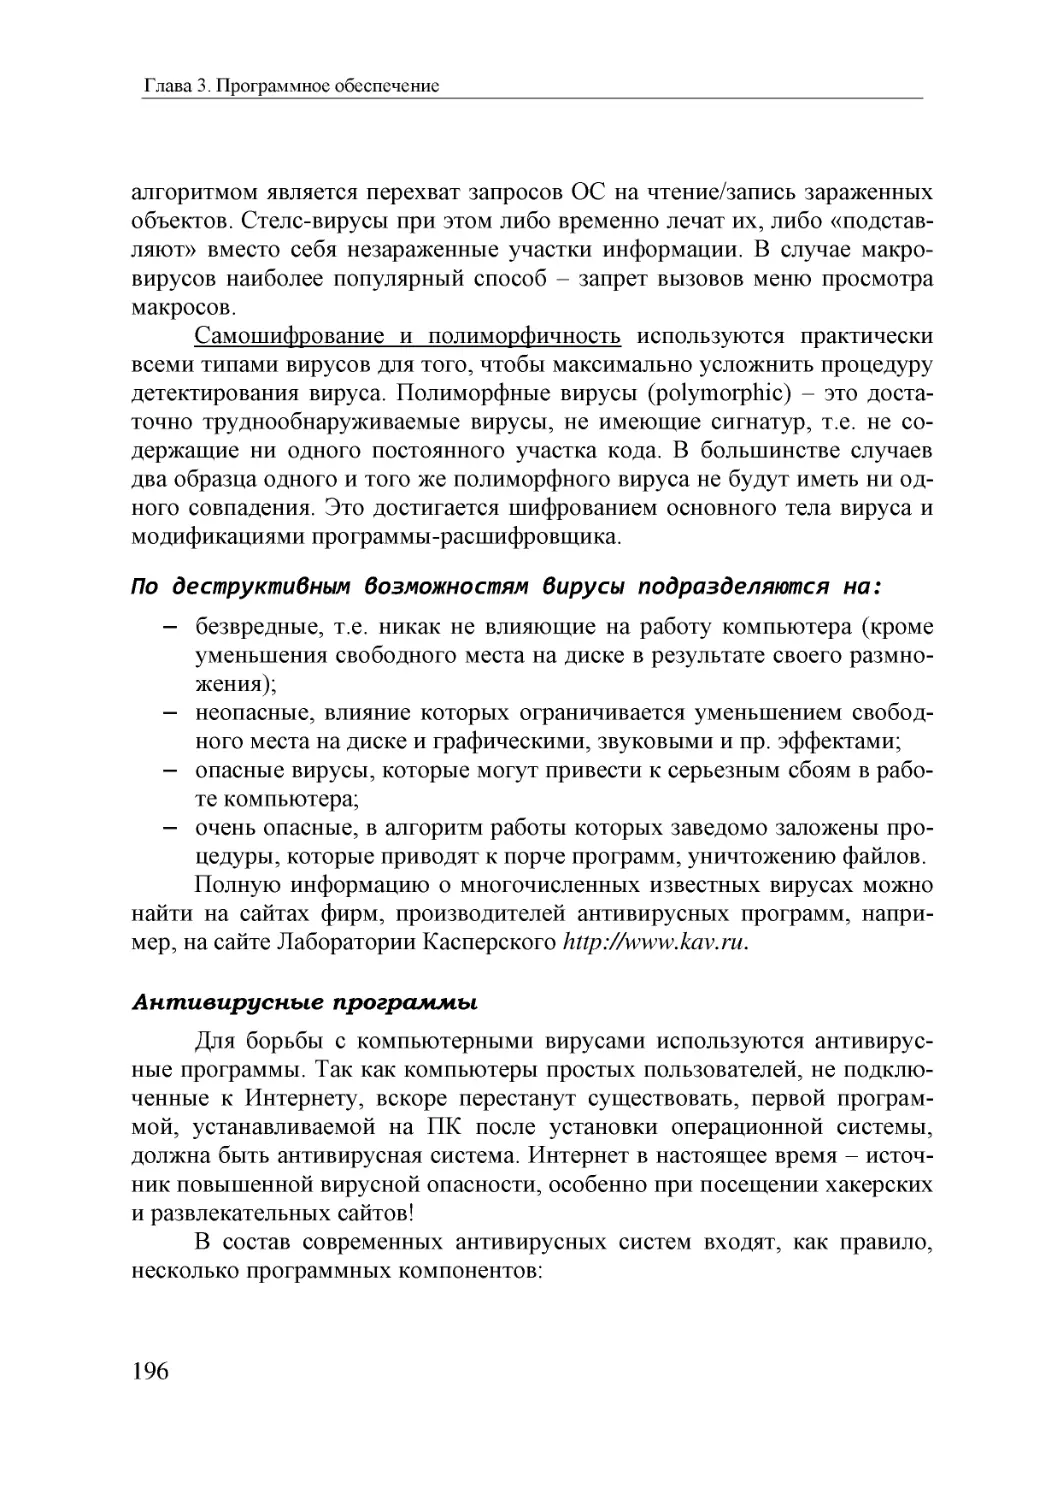 Informatika_Uchebnik_dlya_vuzov_2010 196